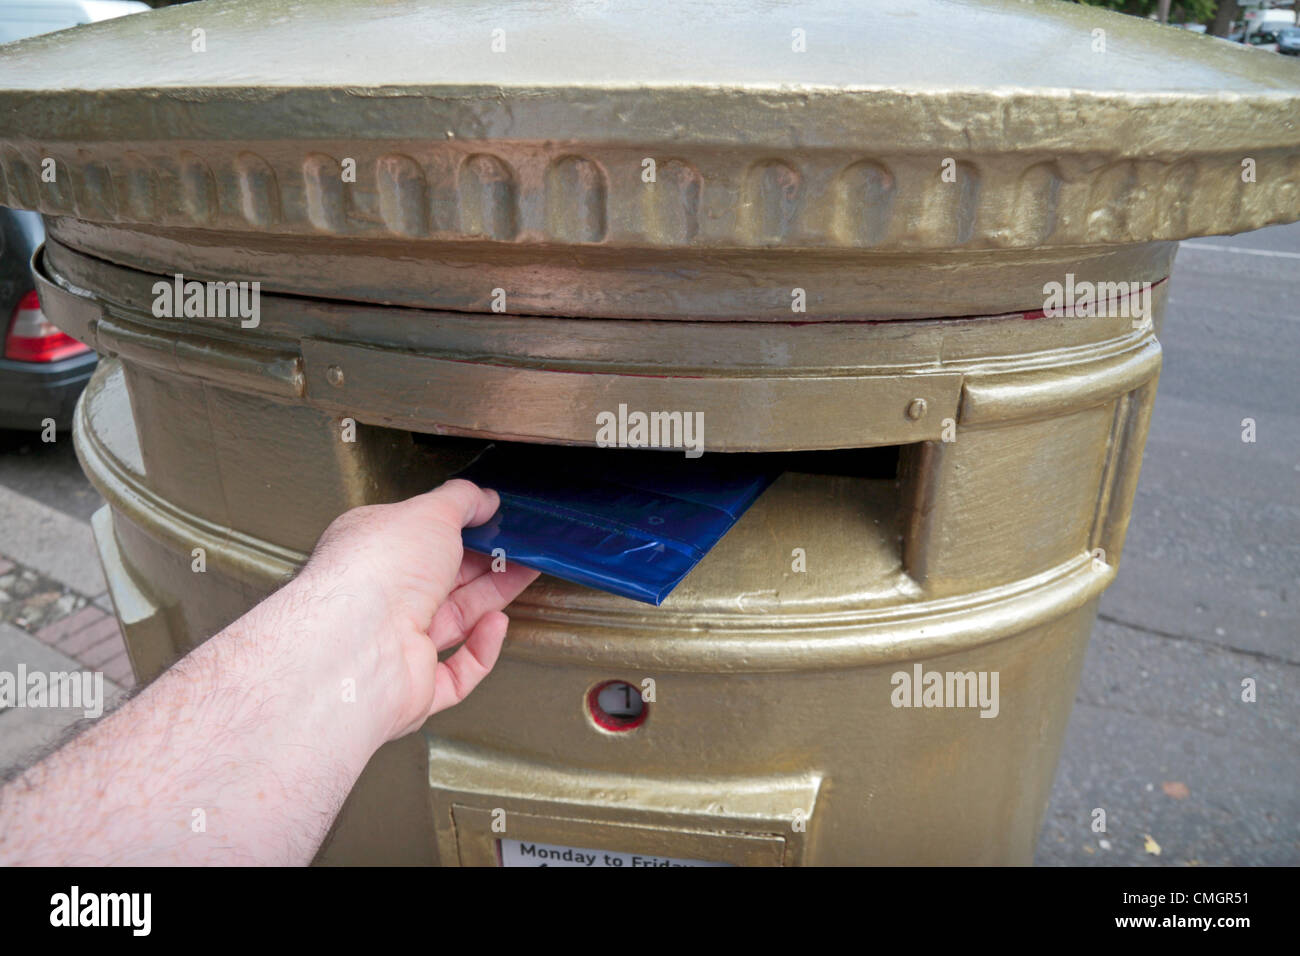 8. August 2012. Royal Mail-Briefkasten in Isleworth, London gemalt, um Großbritanniens Mo Farah Gedenken 10.000 m die Goldmedaille bei den Olympischen Spielen London 2012 am 4. August 2012. Stockfoto